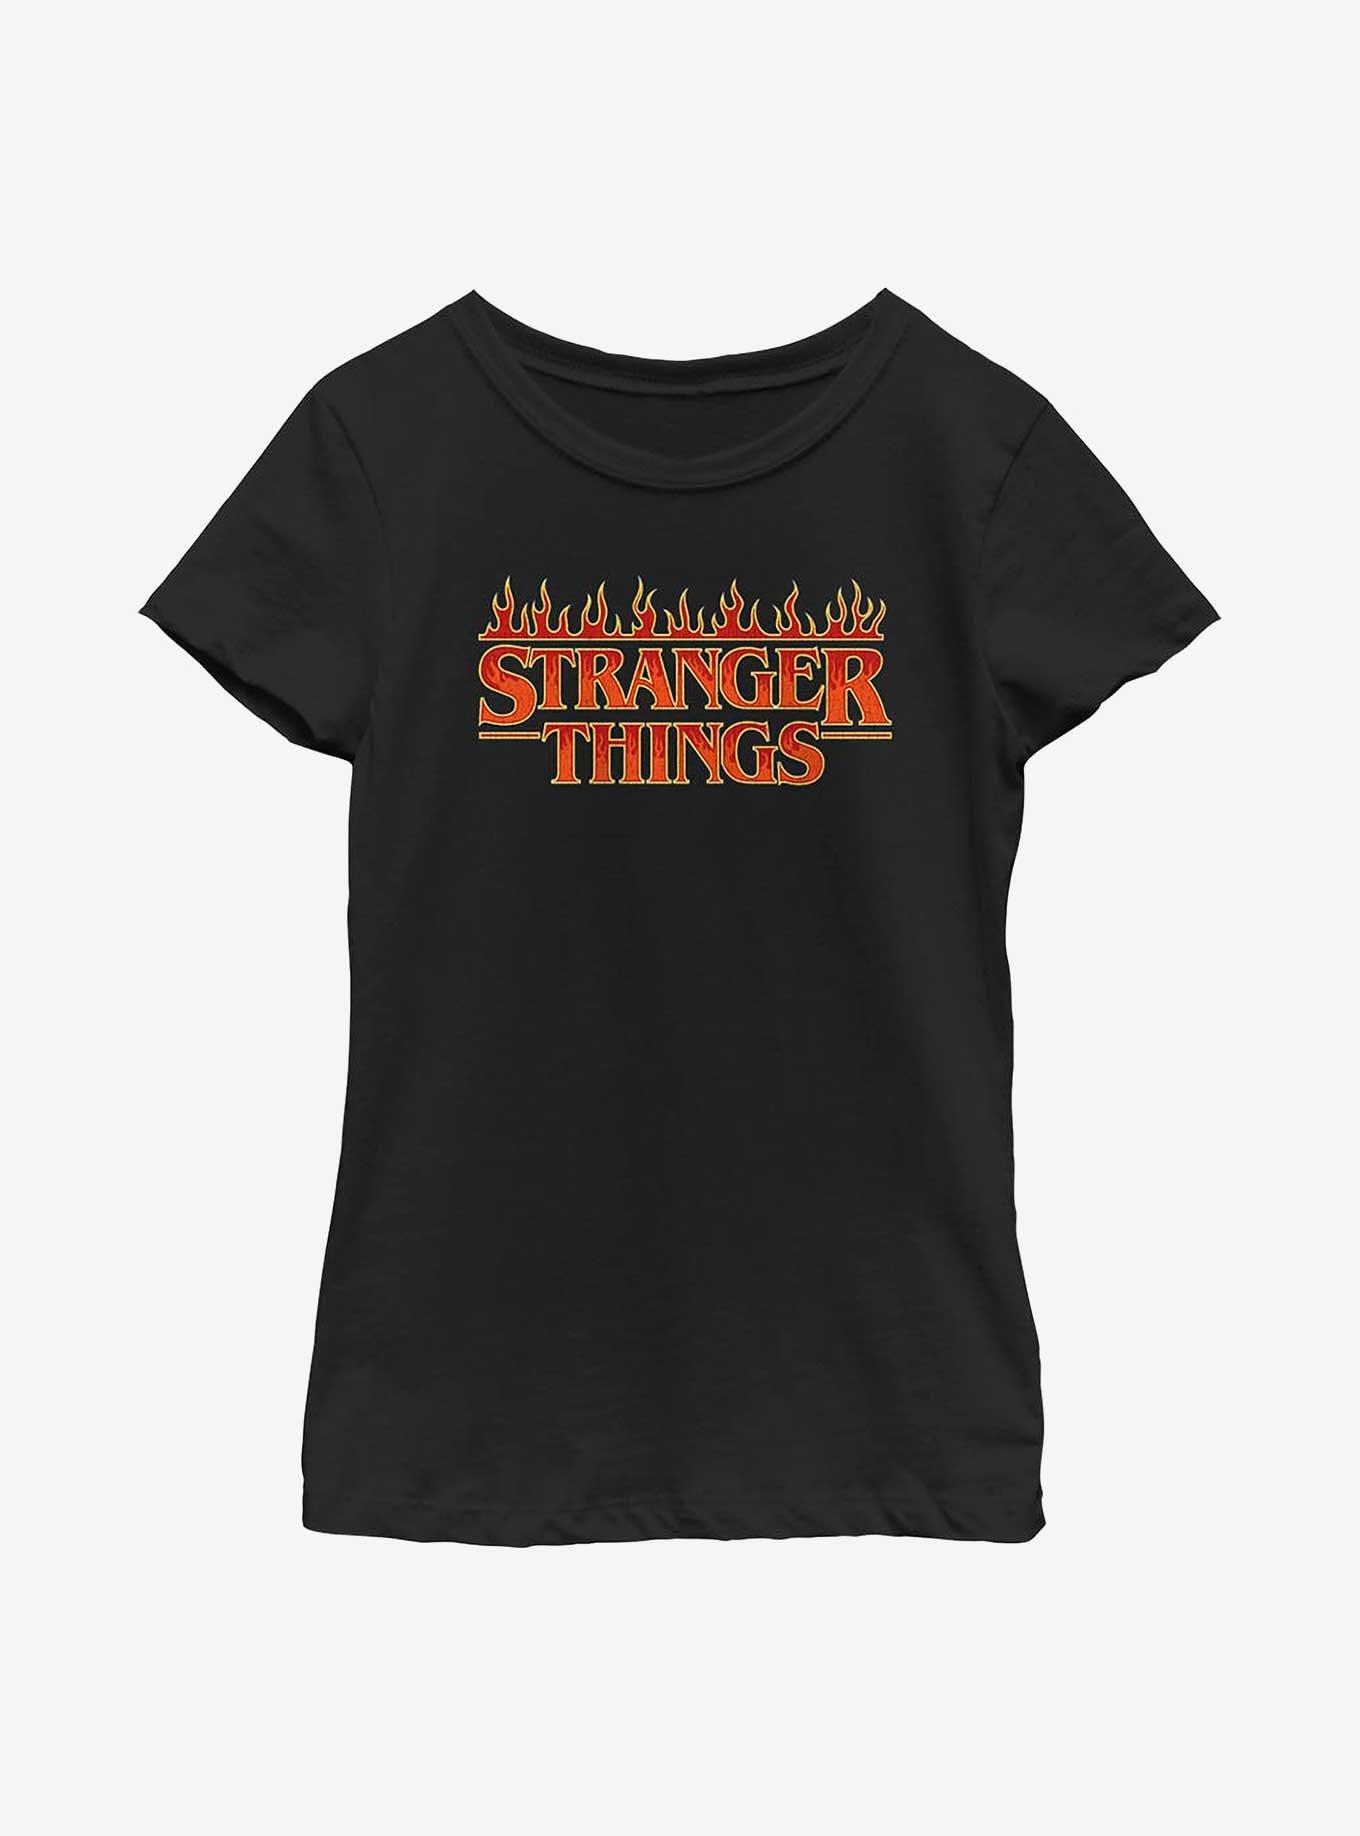 Stranger Things Flaming Logo Youth Girls T-Shirt, BLACK, hi-res